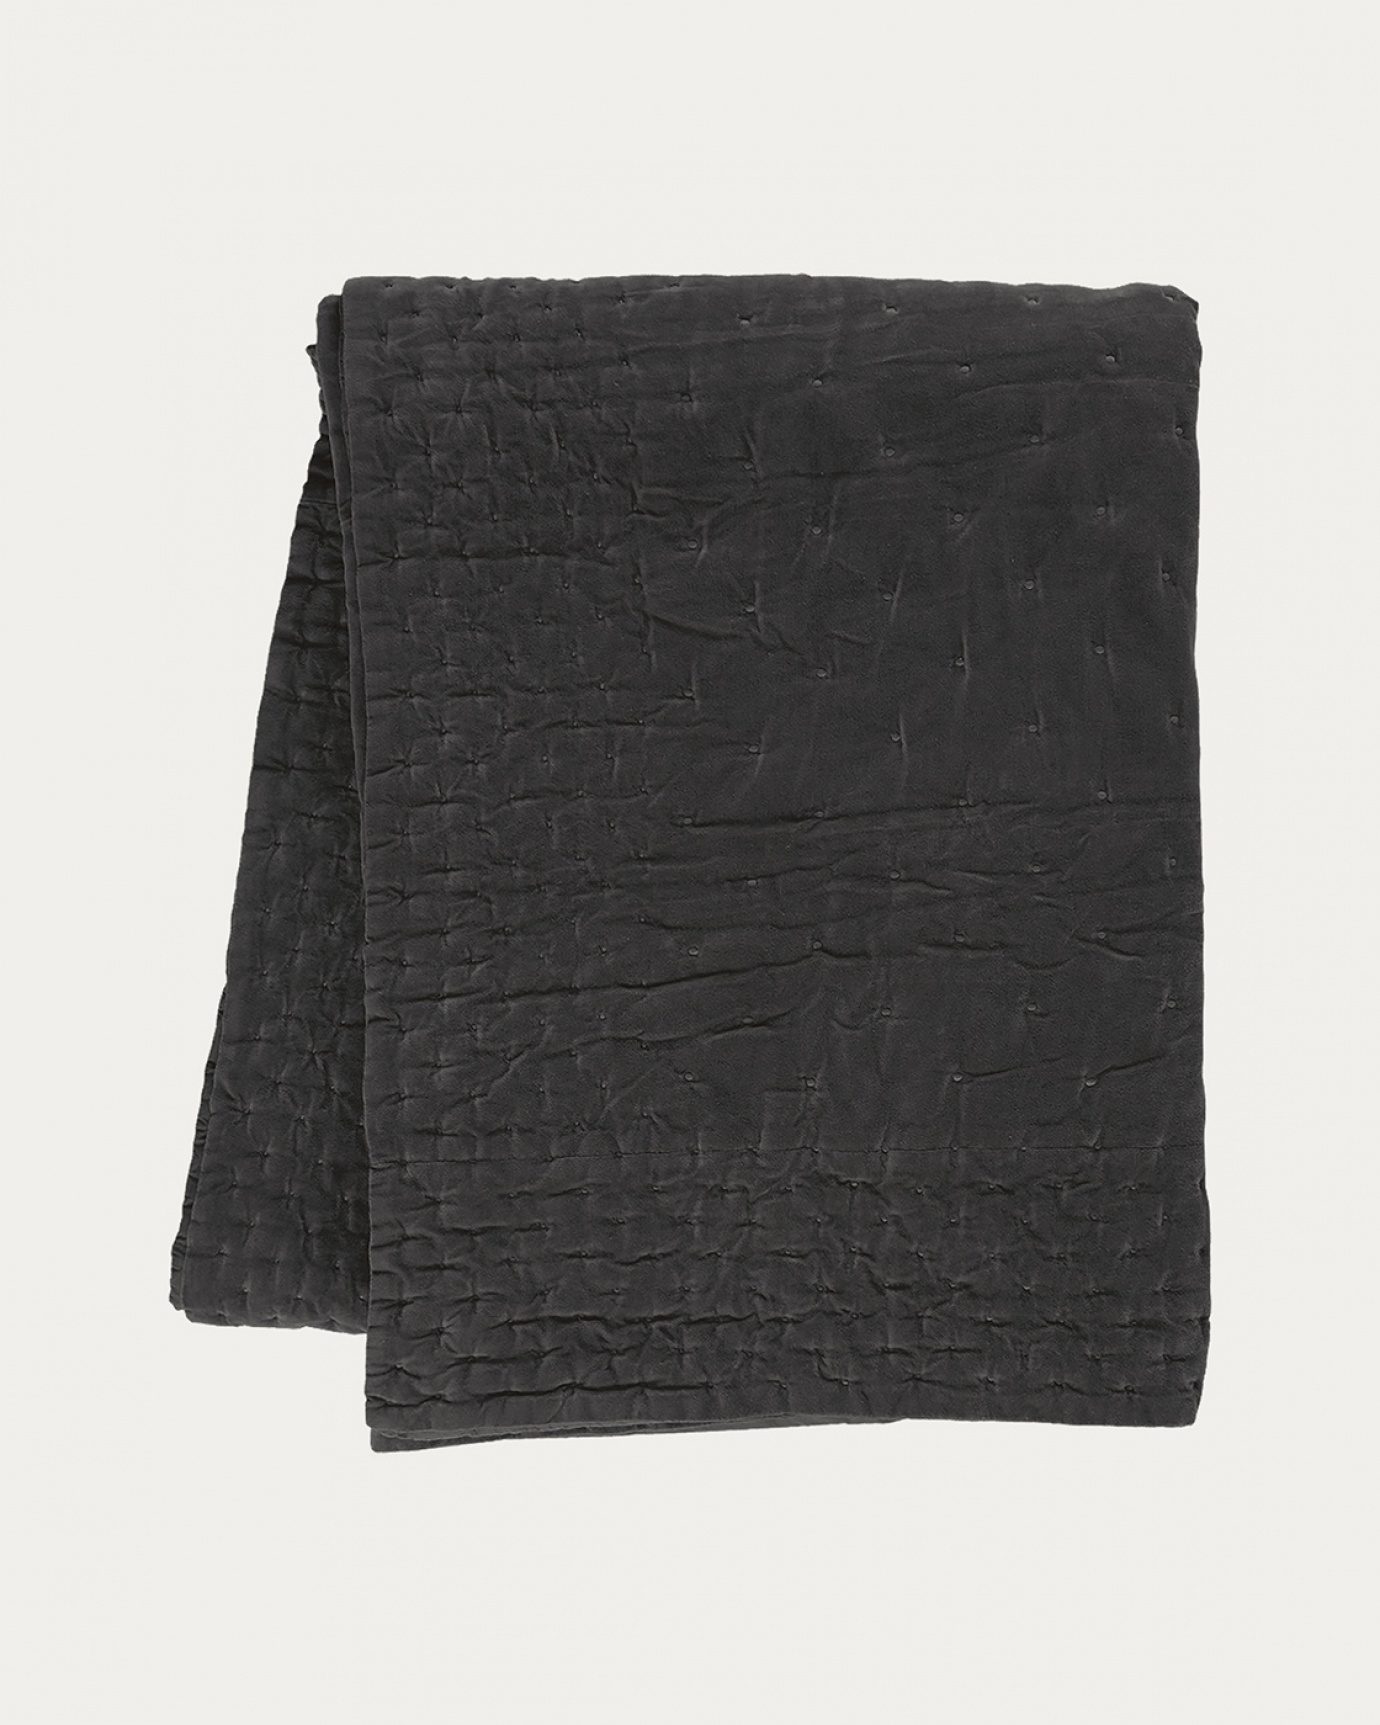 Immagine prodotto grigio antracite scuro PAOLO copriletto in morbido velluto di cotone per letto matrimoniale di LINUM DESIGN. Dimensioni 270x260 cm.